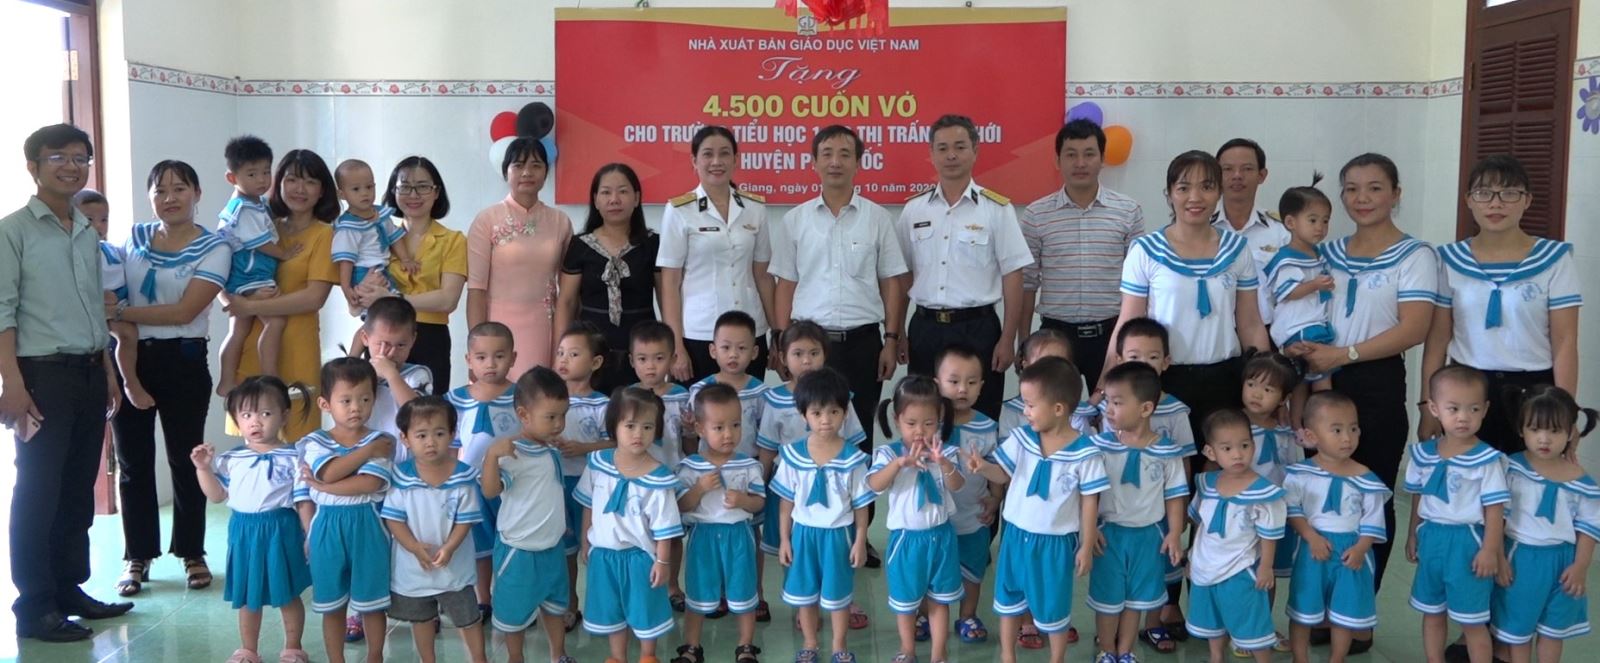 NXBGDVN tặng quà cho học sinh mầm non, tiểu học thị trấn An Thới, Phú Quốc